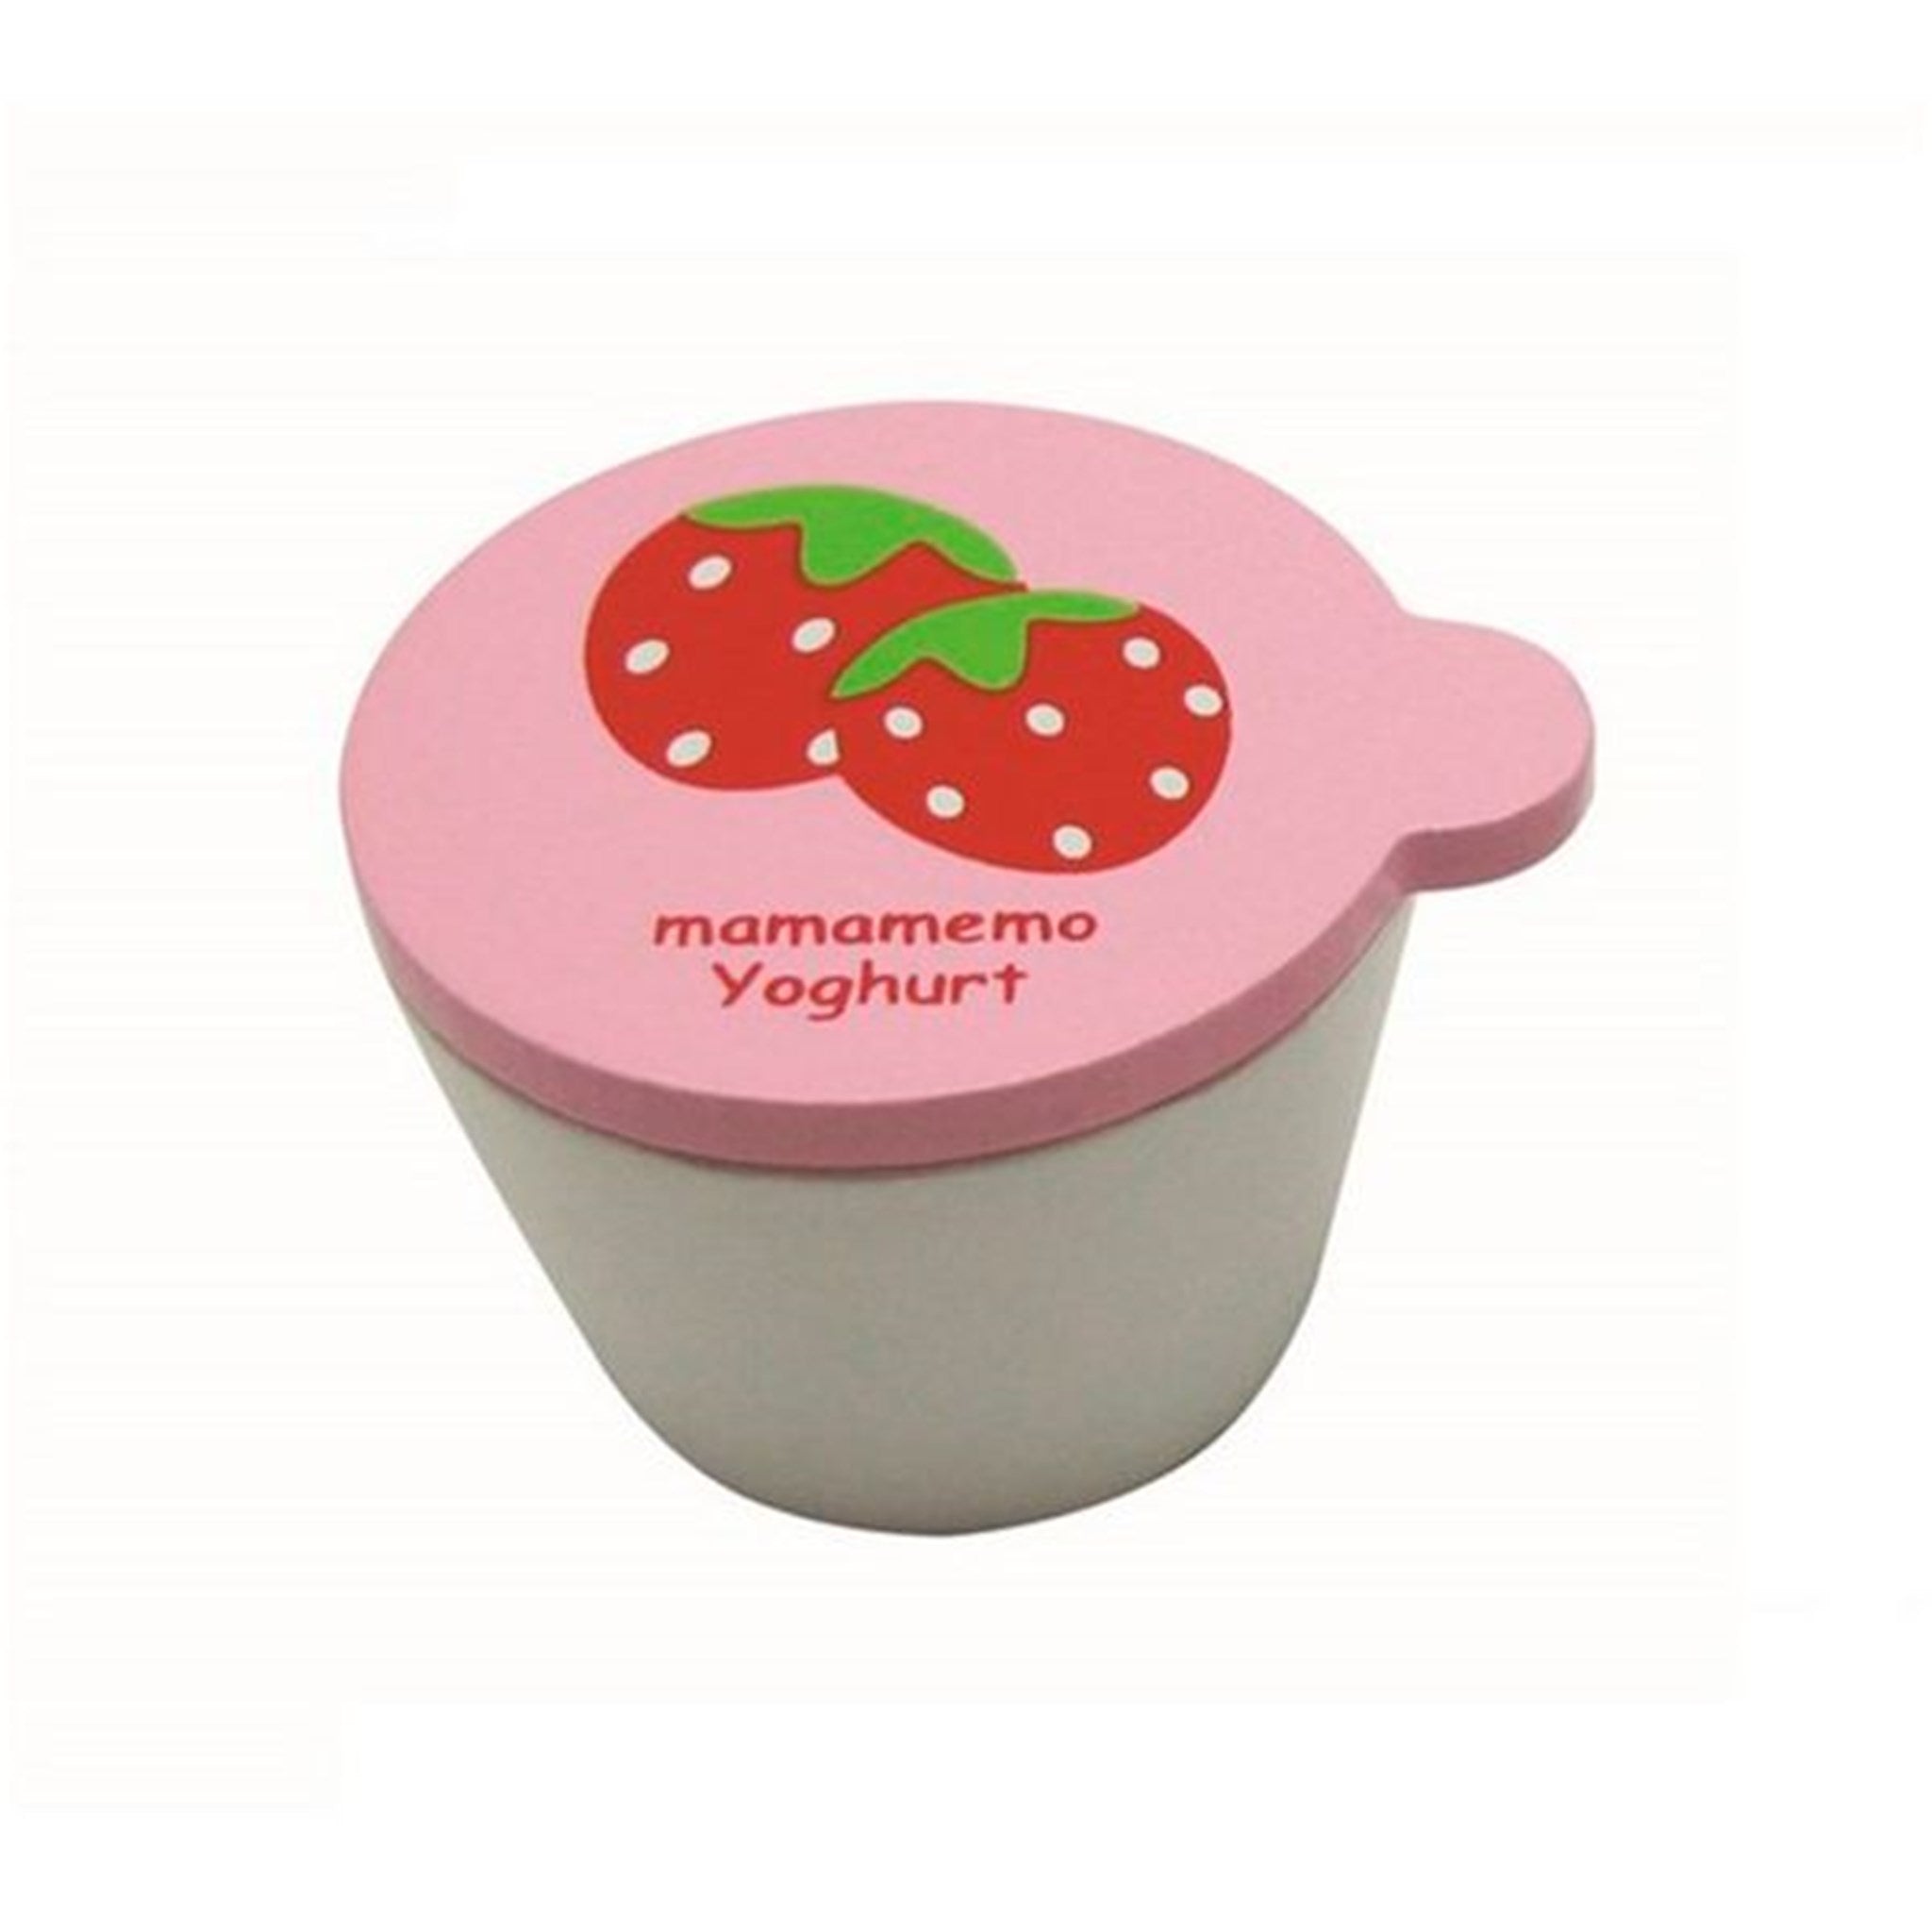 MaMaMemo Strawberry Yoghurt